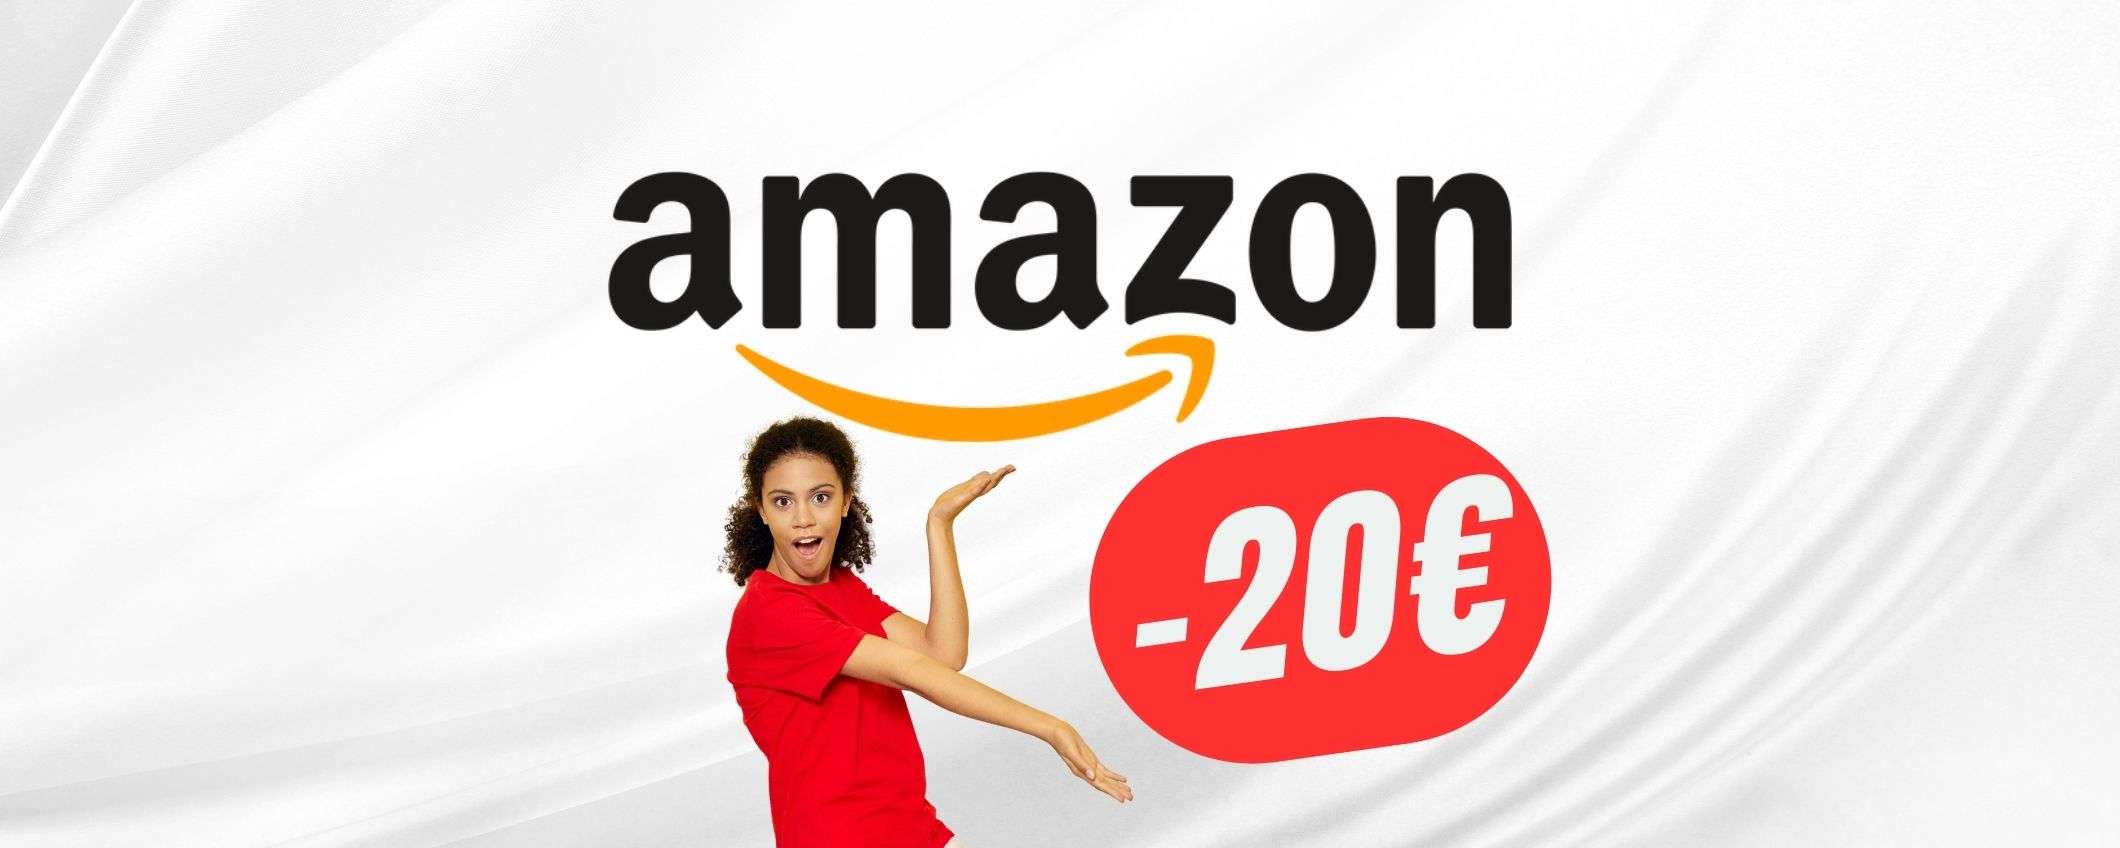 Ecco cosa acquisti su Amazon a meno di 20€!